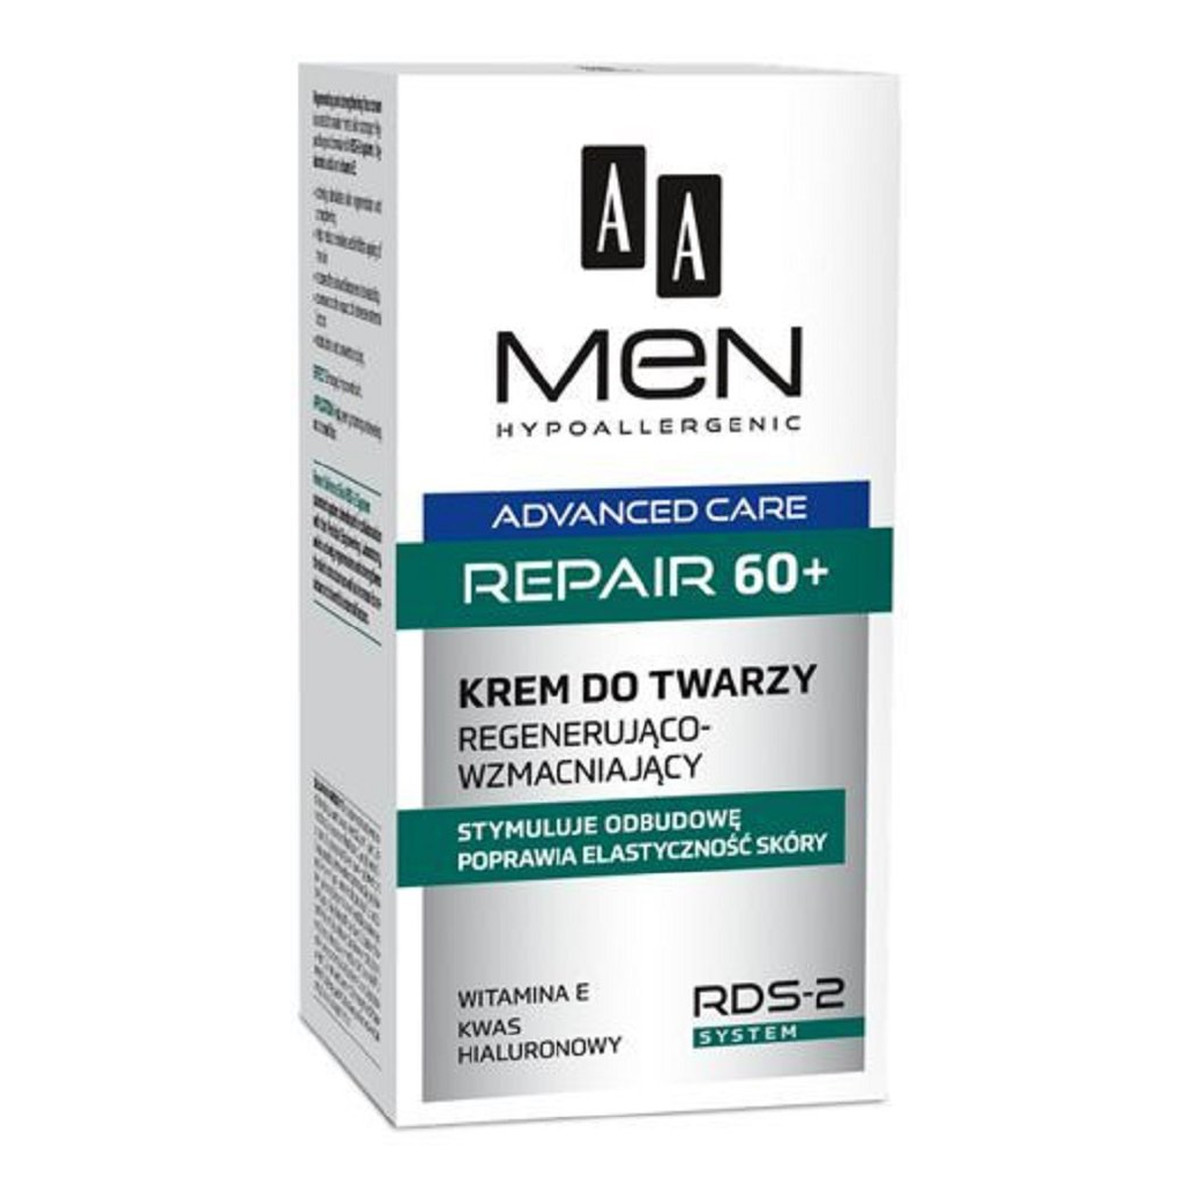 AA Men Advanced Care Face Cream Repair 60+ Regenerująco-wzmacniający krem do twarzy 50ml